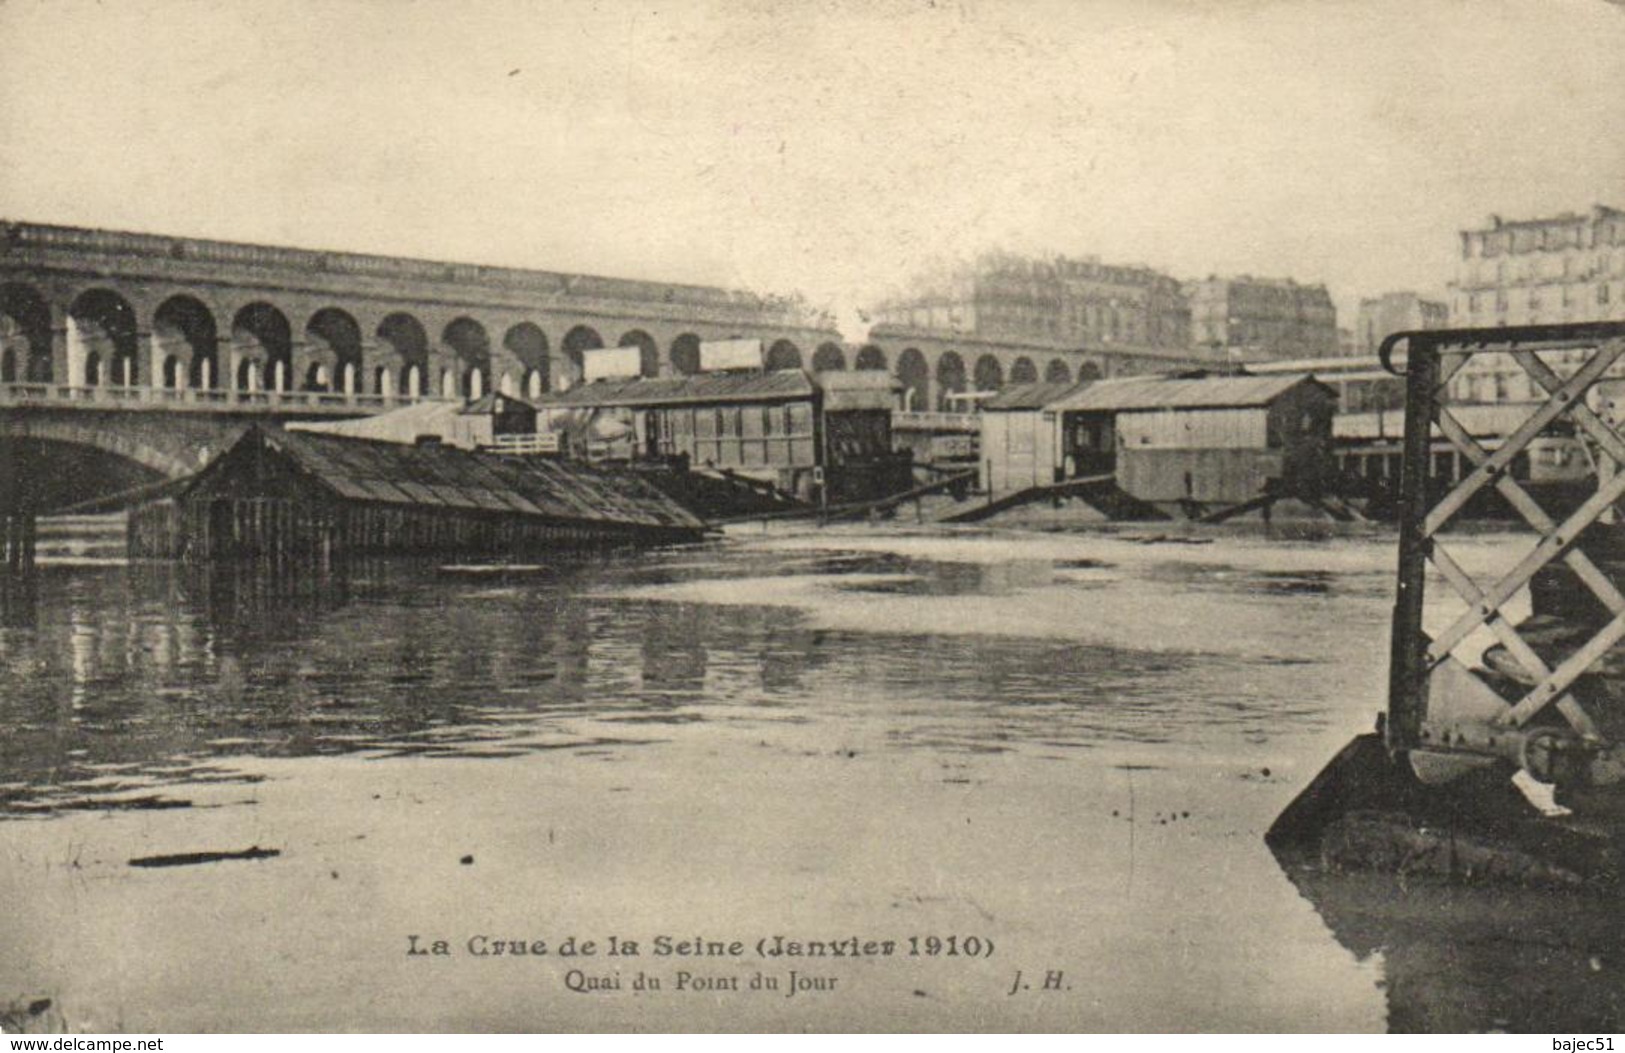 1 Cpa Crue De La Seine - Paris - Quai Du Point Du Jour (janvier 1910) - éditeur: J.H - Paris Flood, 1910